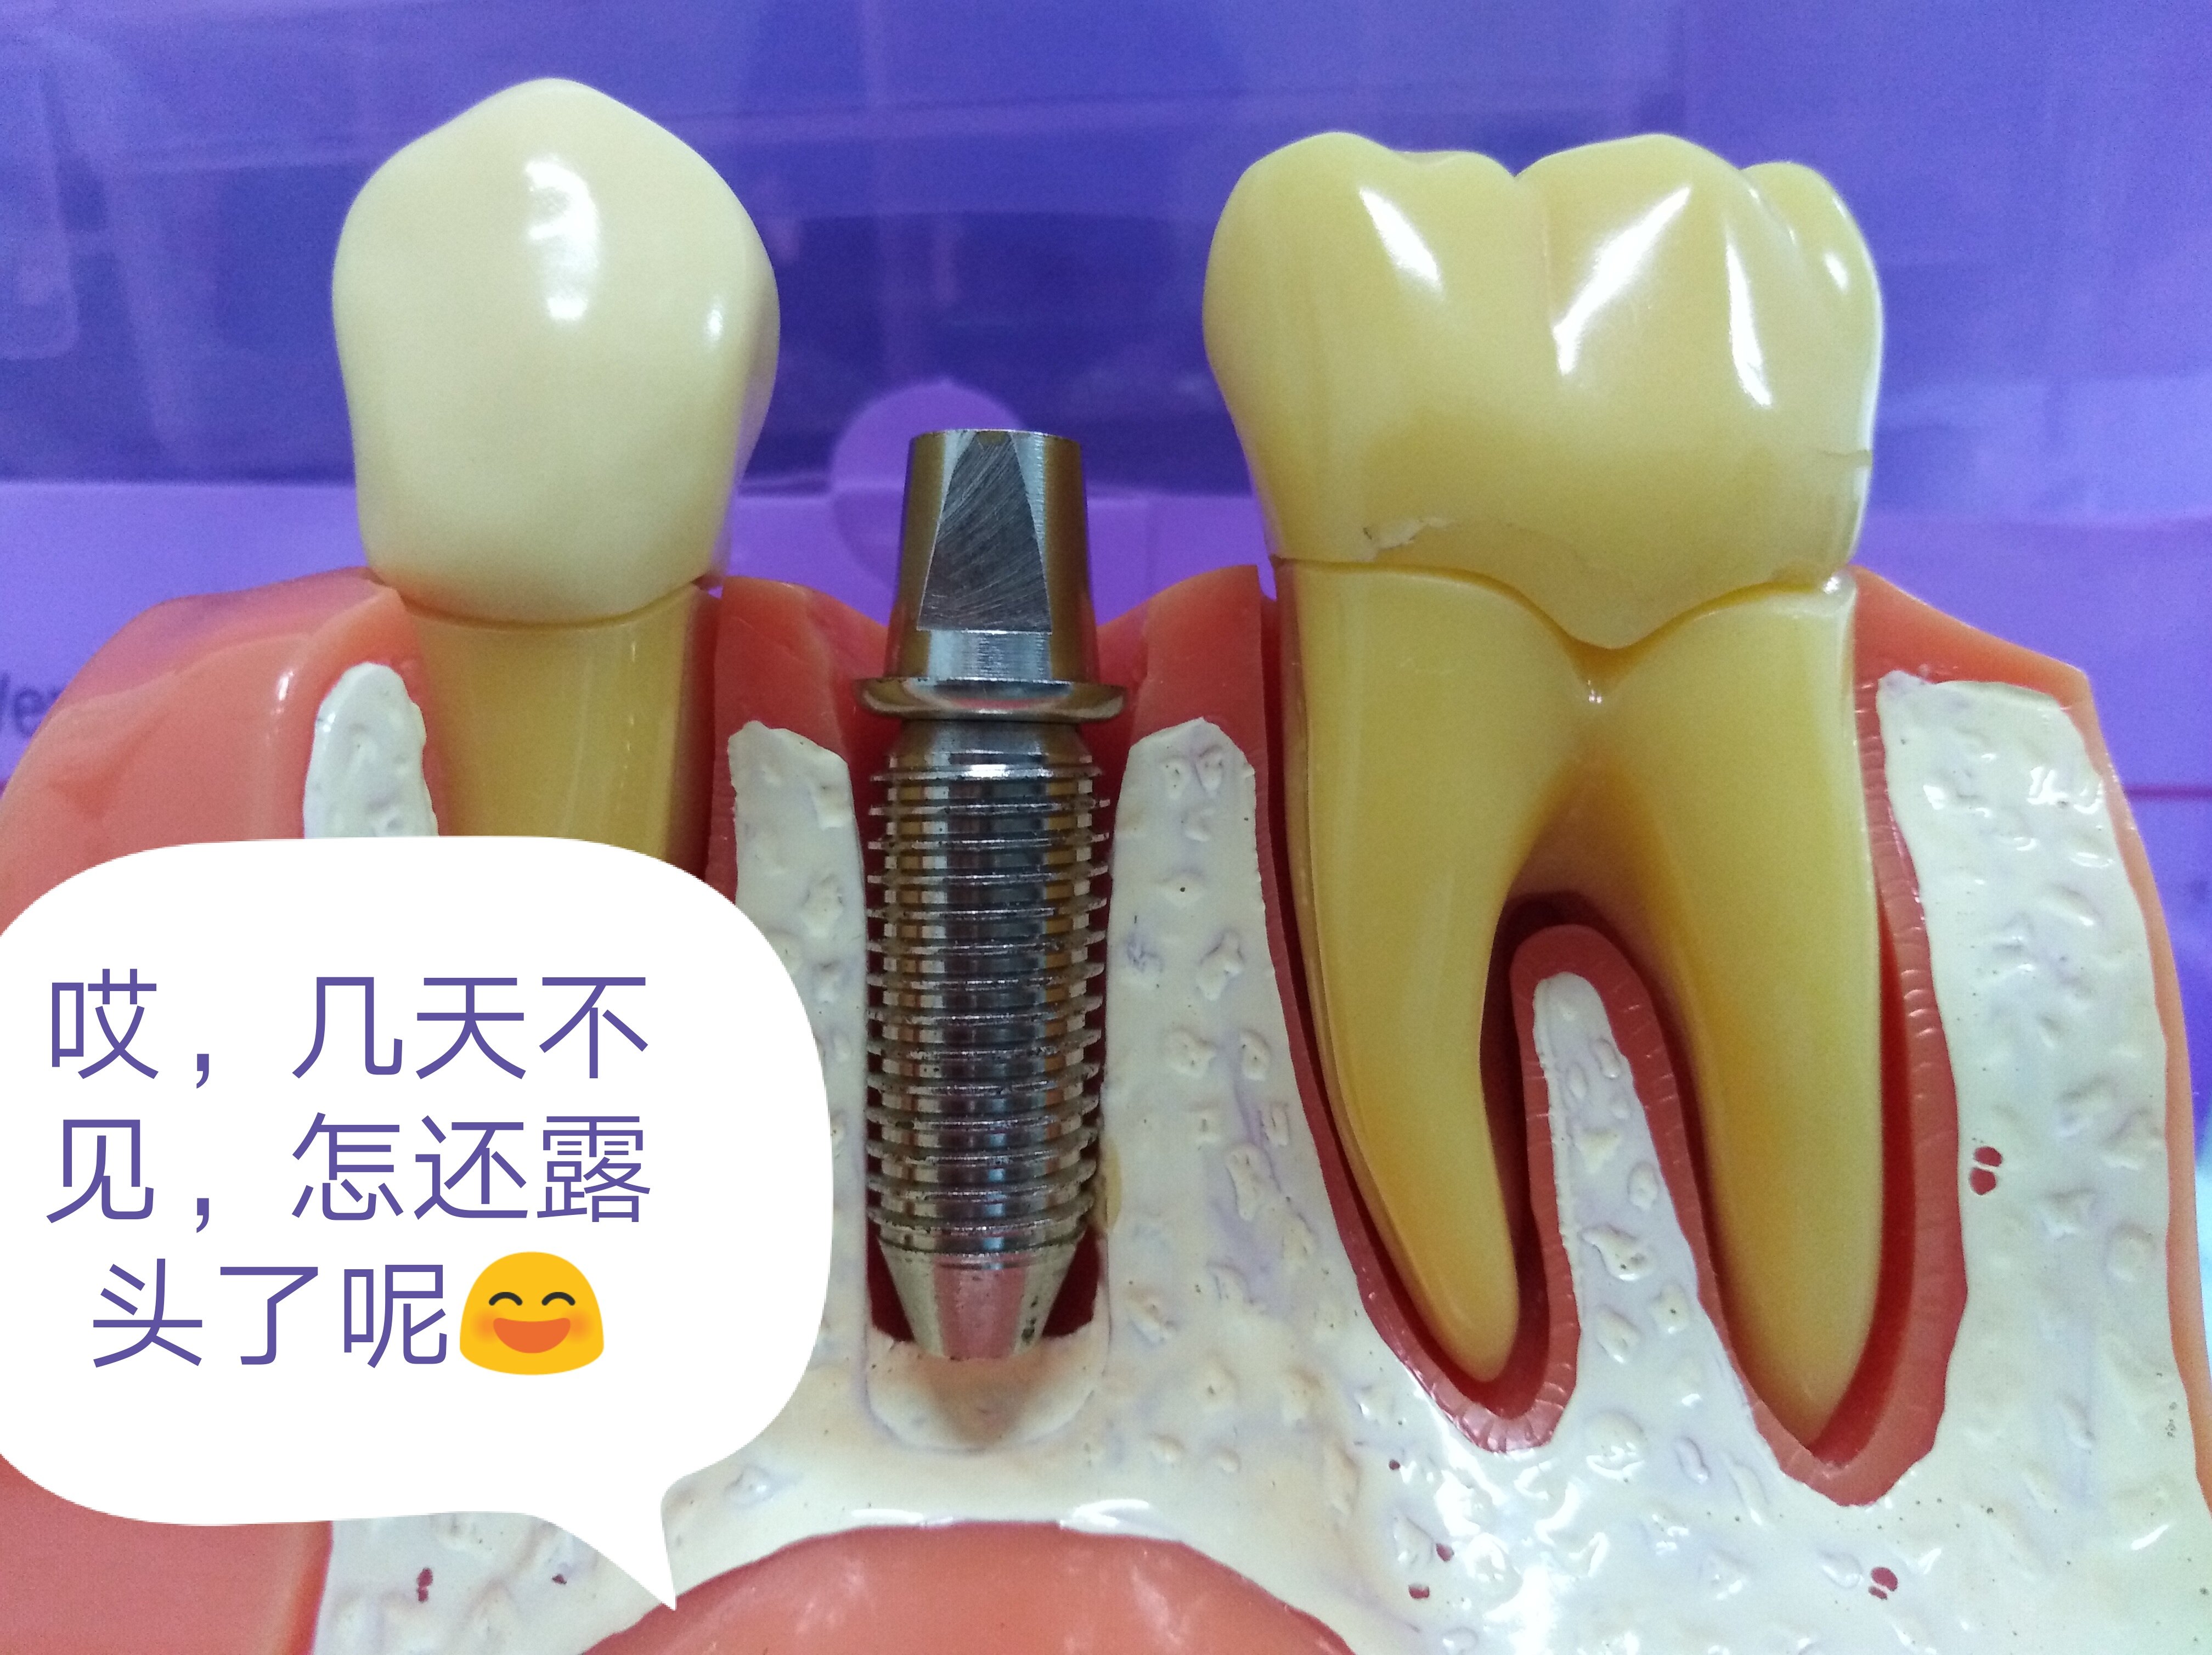 林宝山医生关于种植牙的对话_牙齿种植_牙齿种植疾病介绍 好大夫